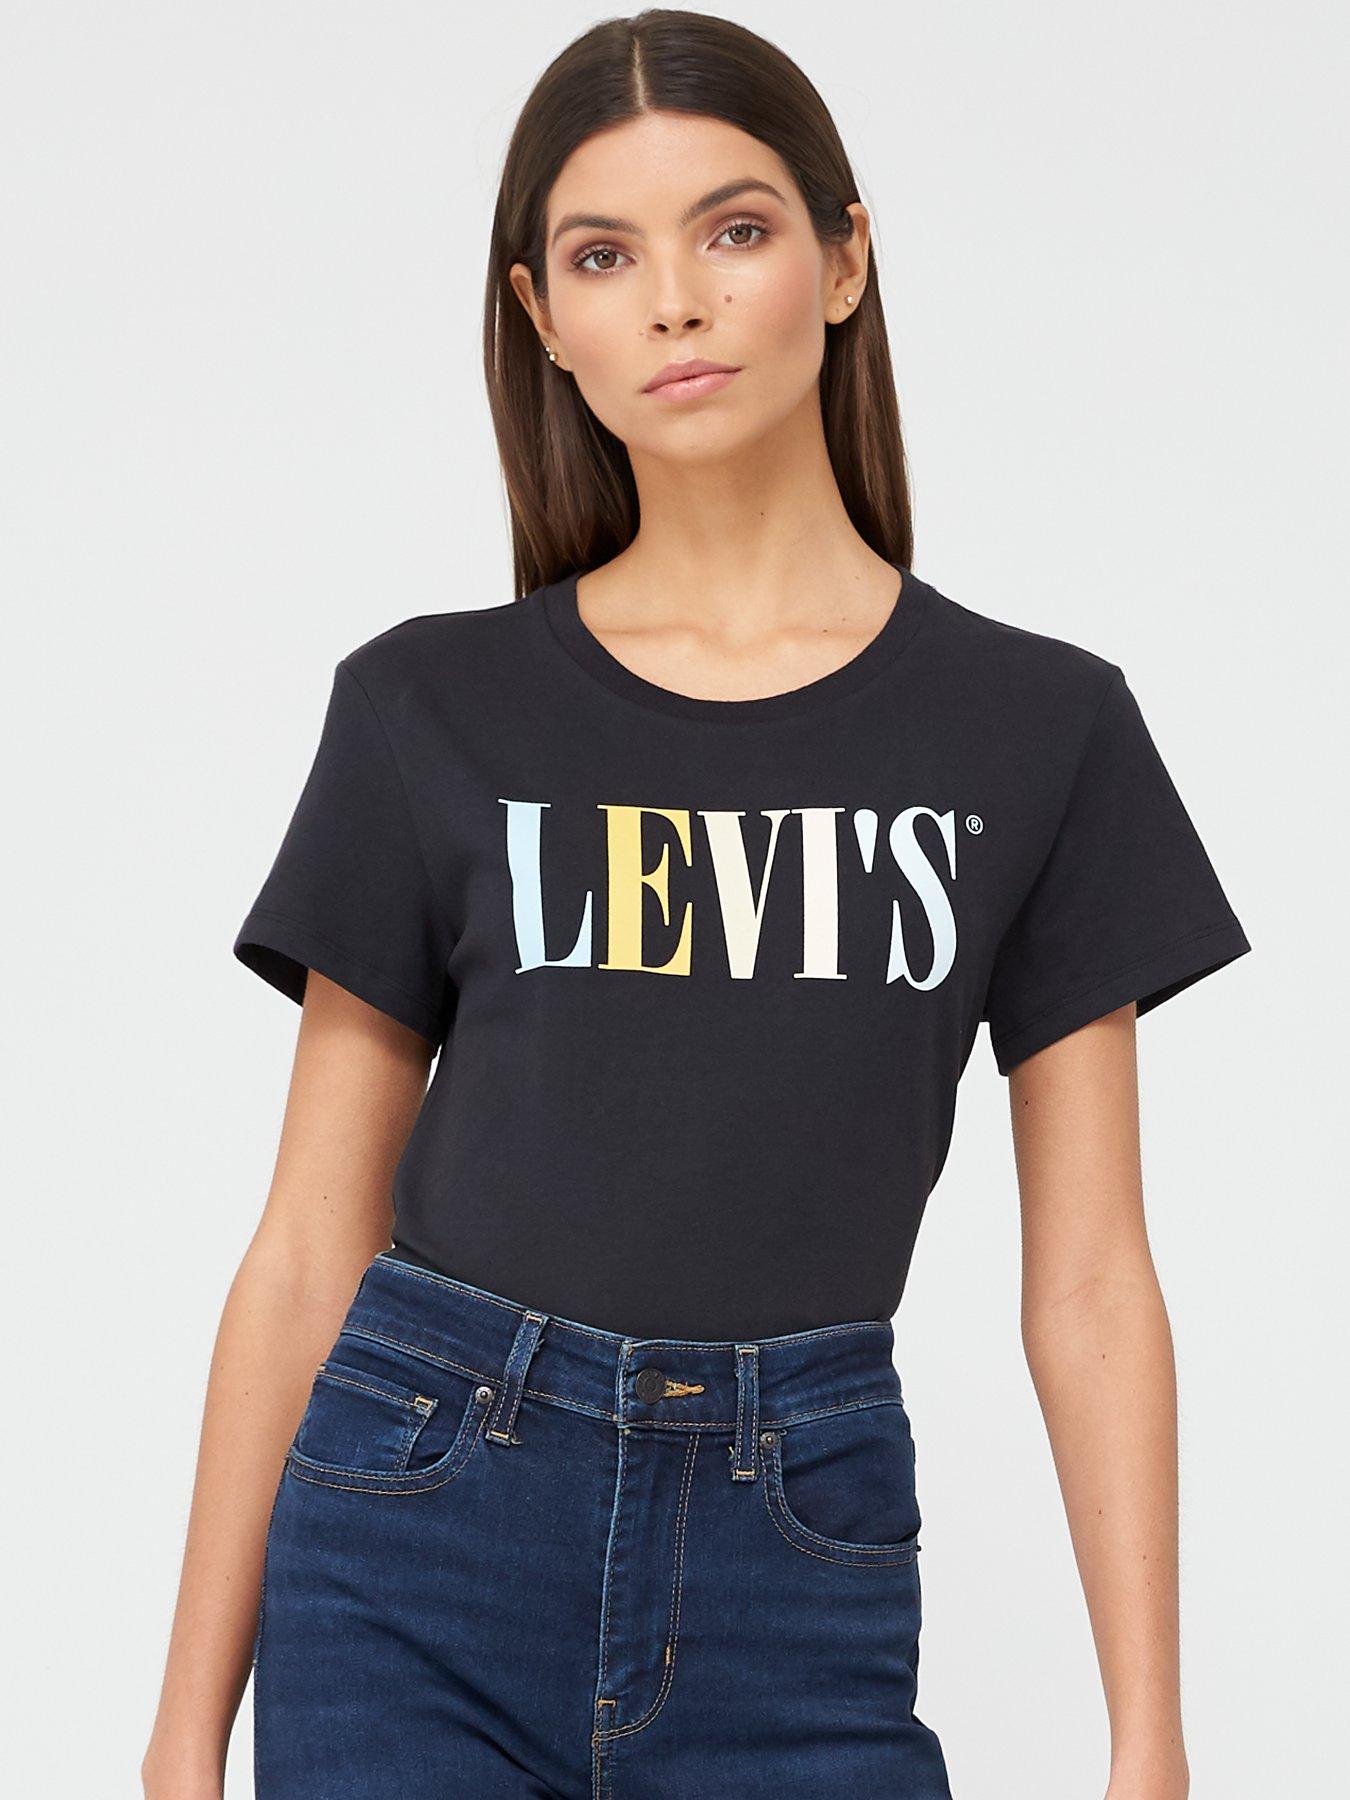 levis womens blouses